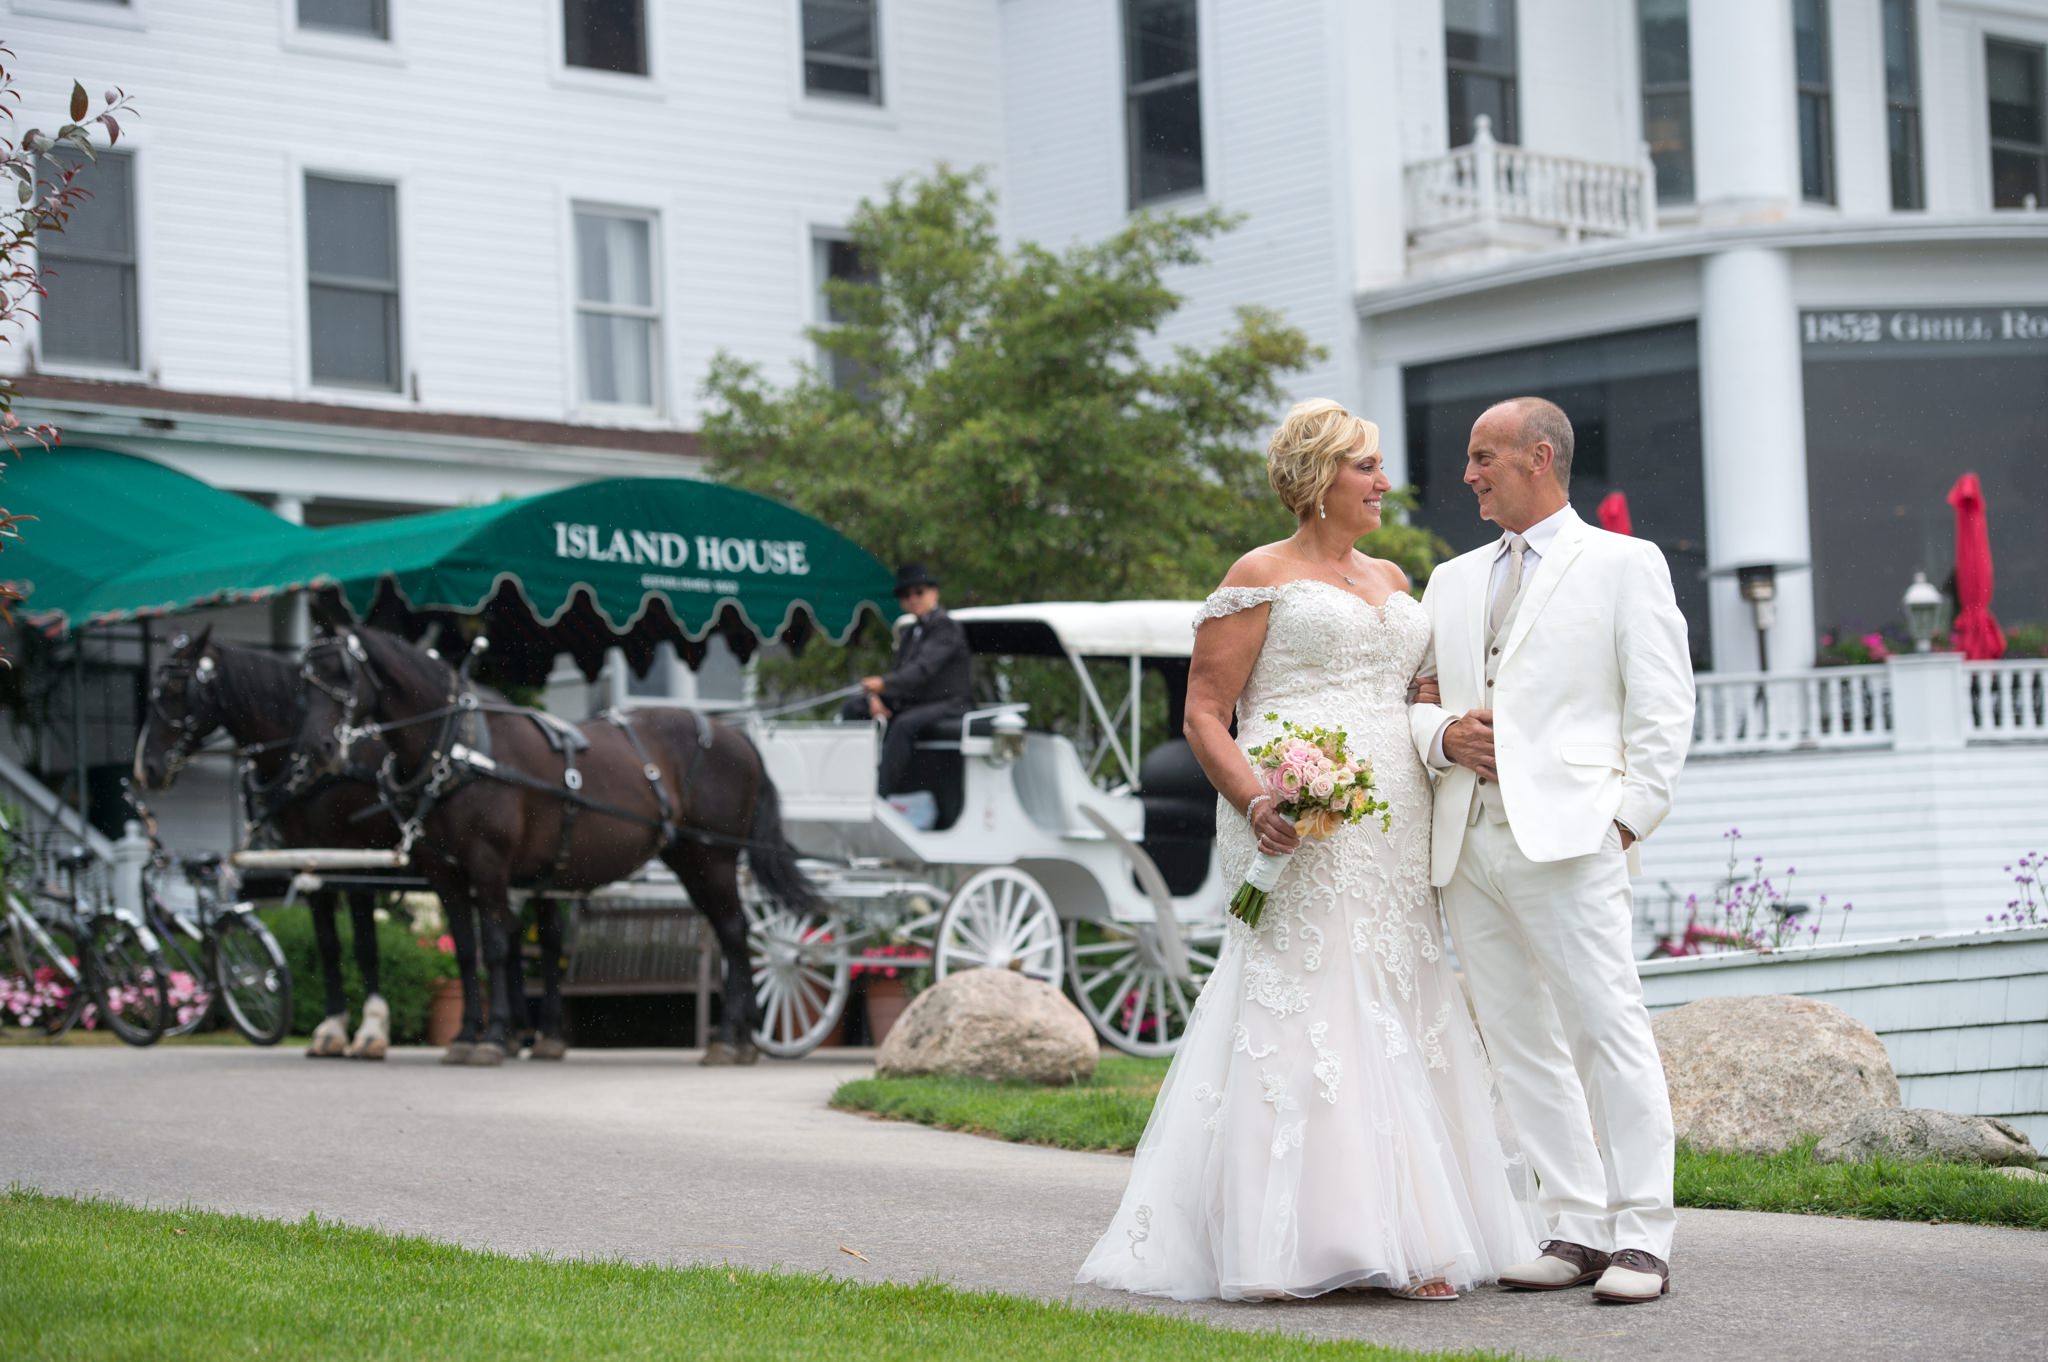 Island House wedding on Mackinac Island